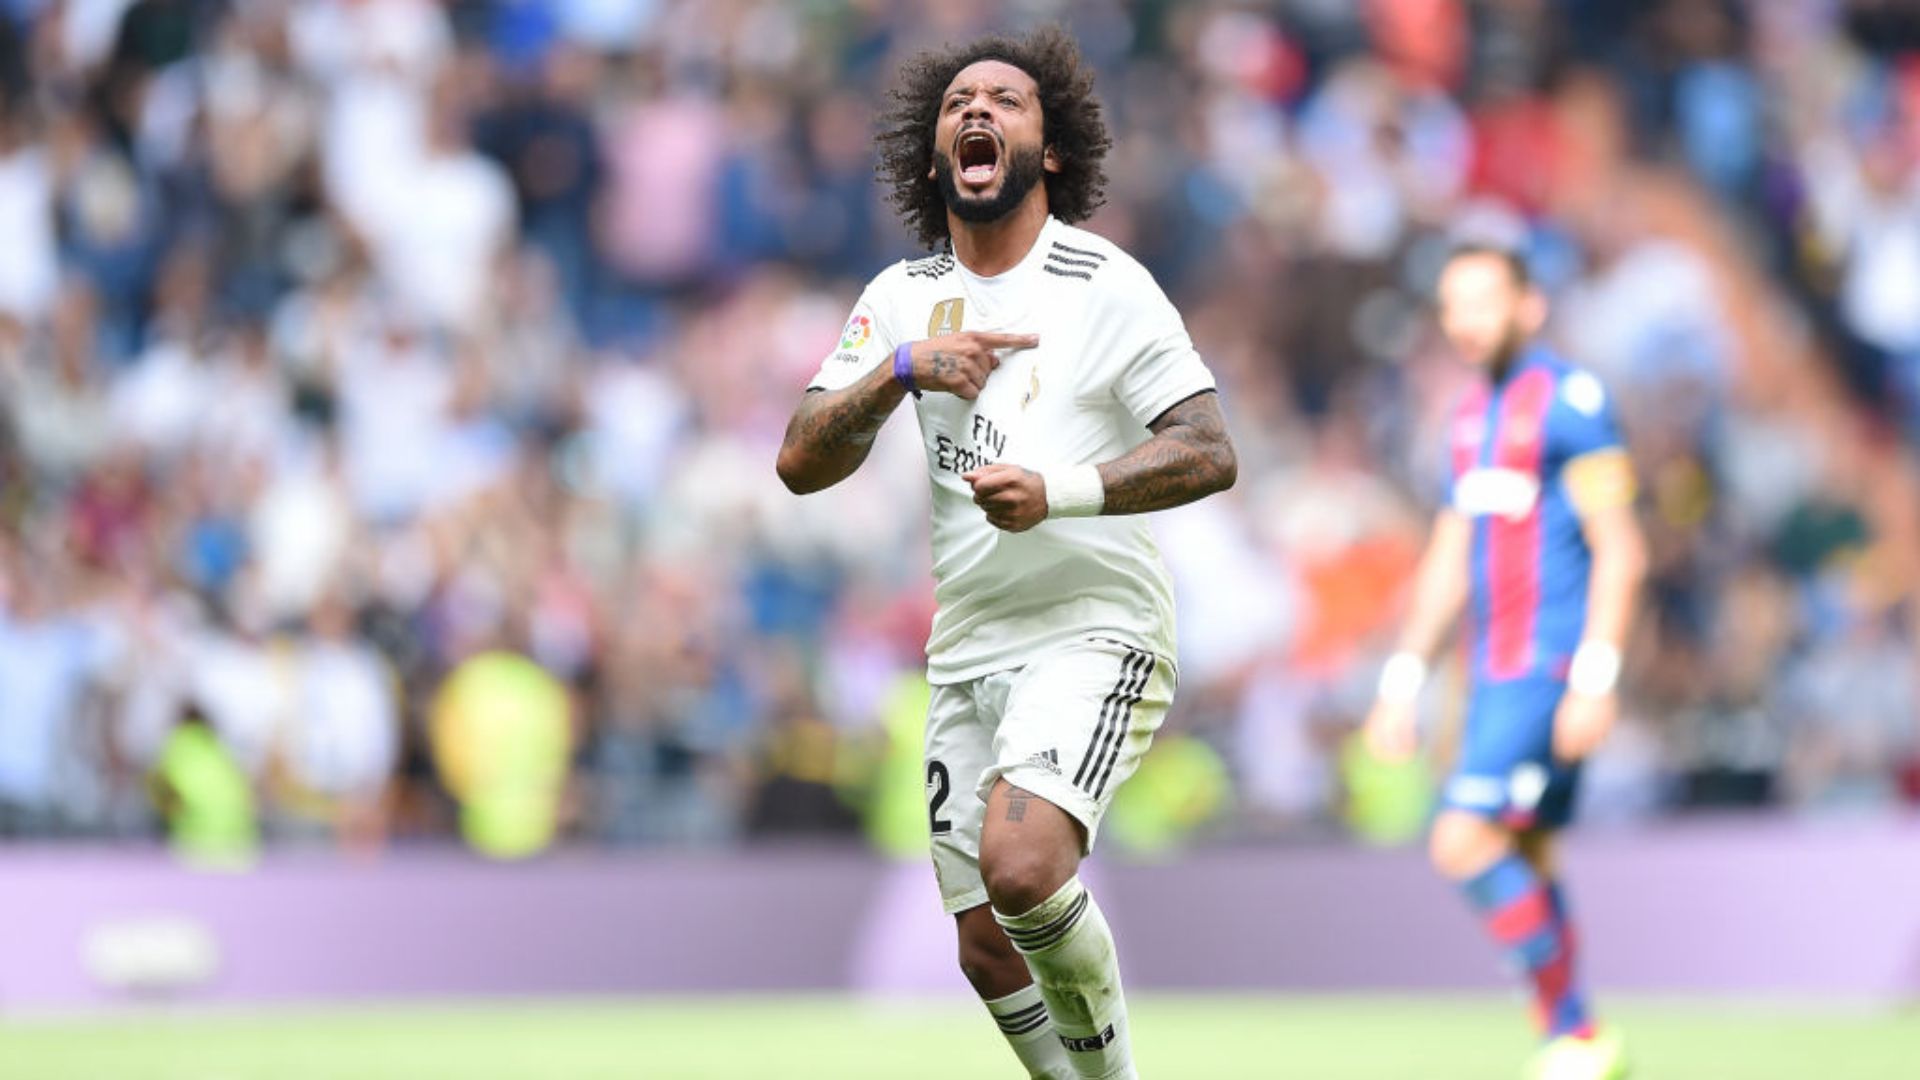 Marcelo comemorando o gol pelo Real Madrid